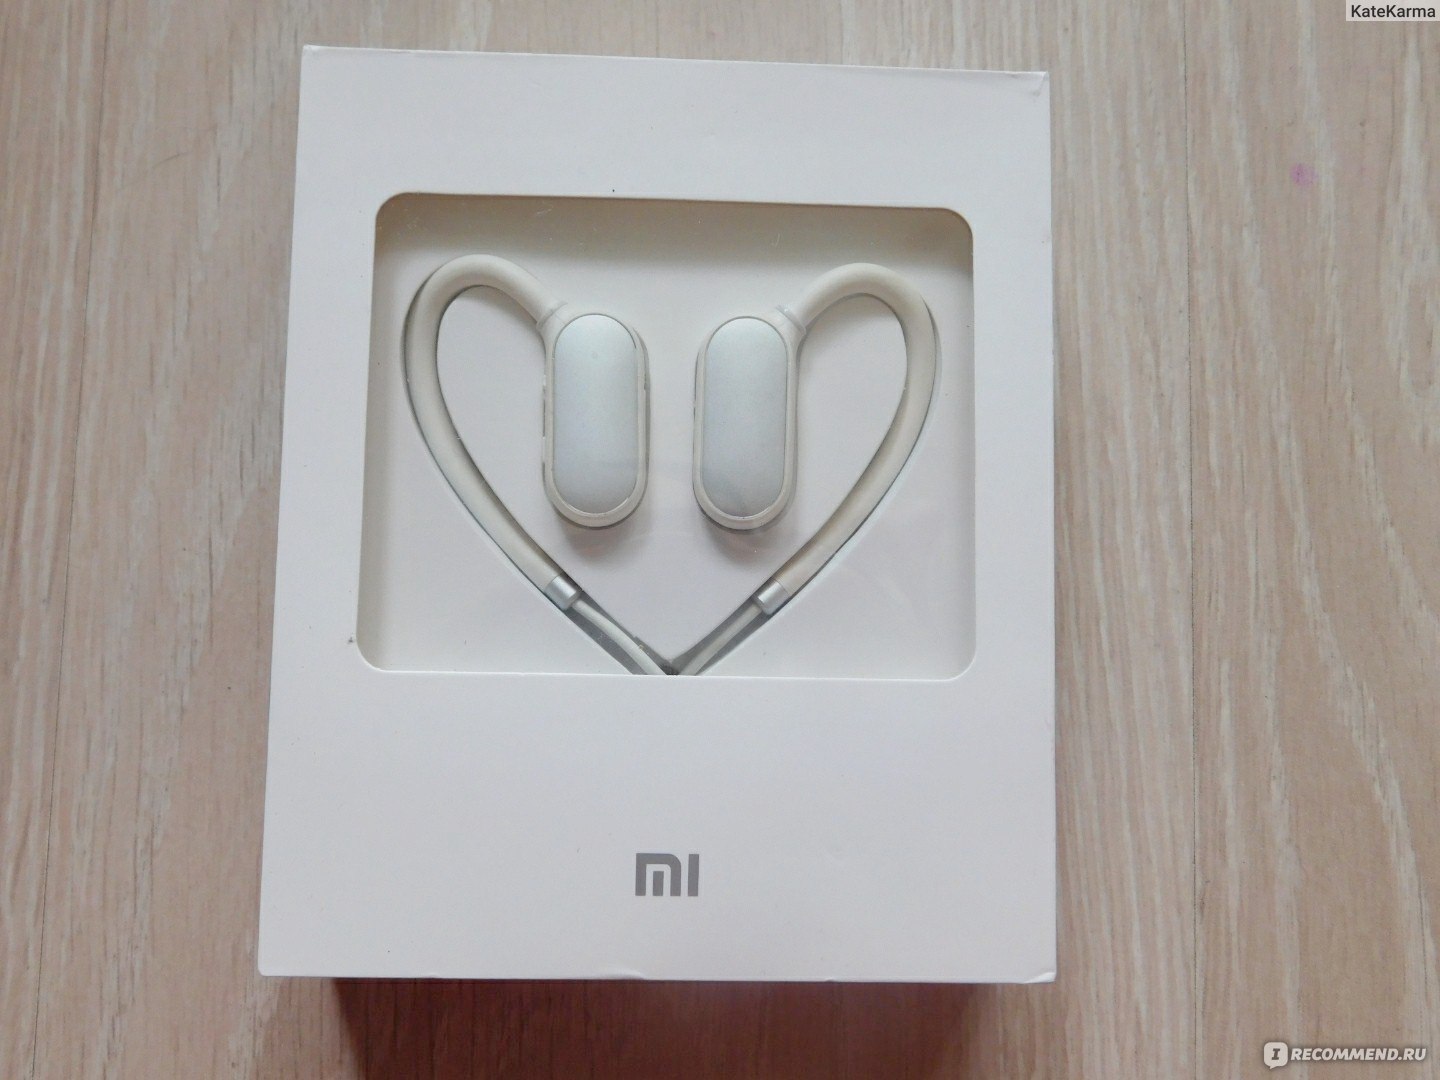 Xiaomi Mi Sport White